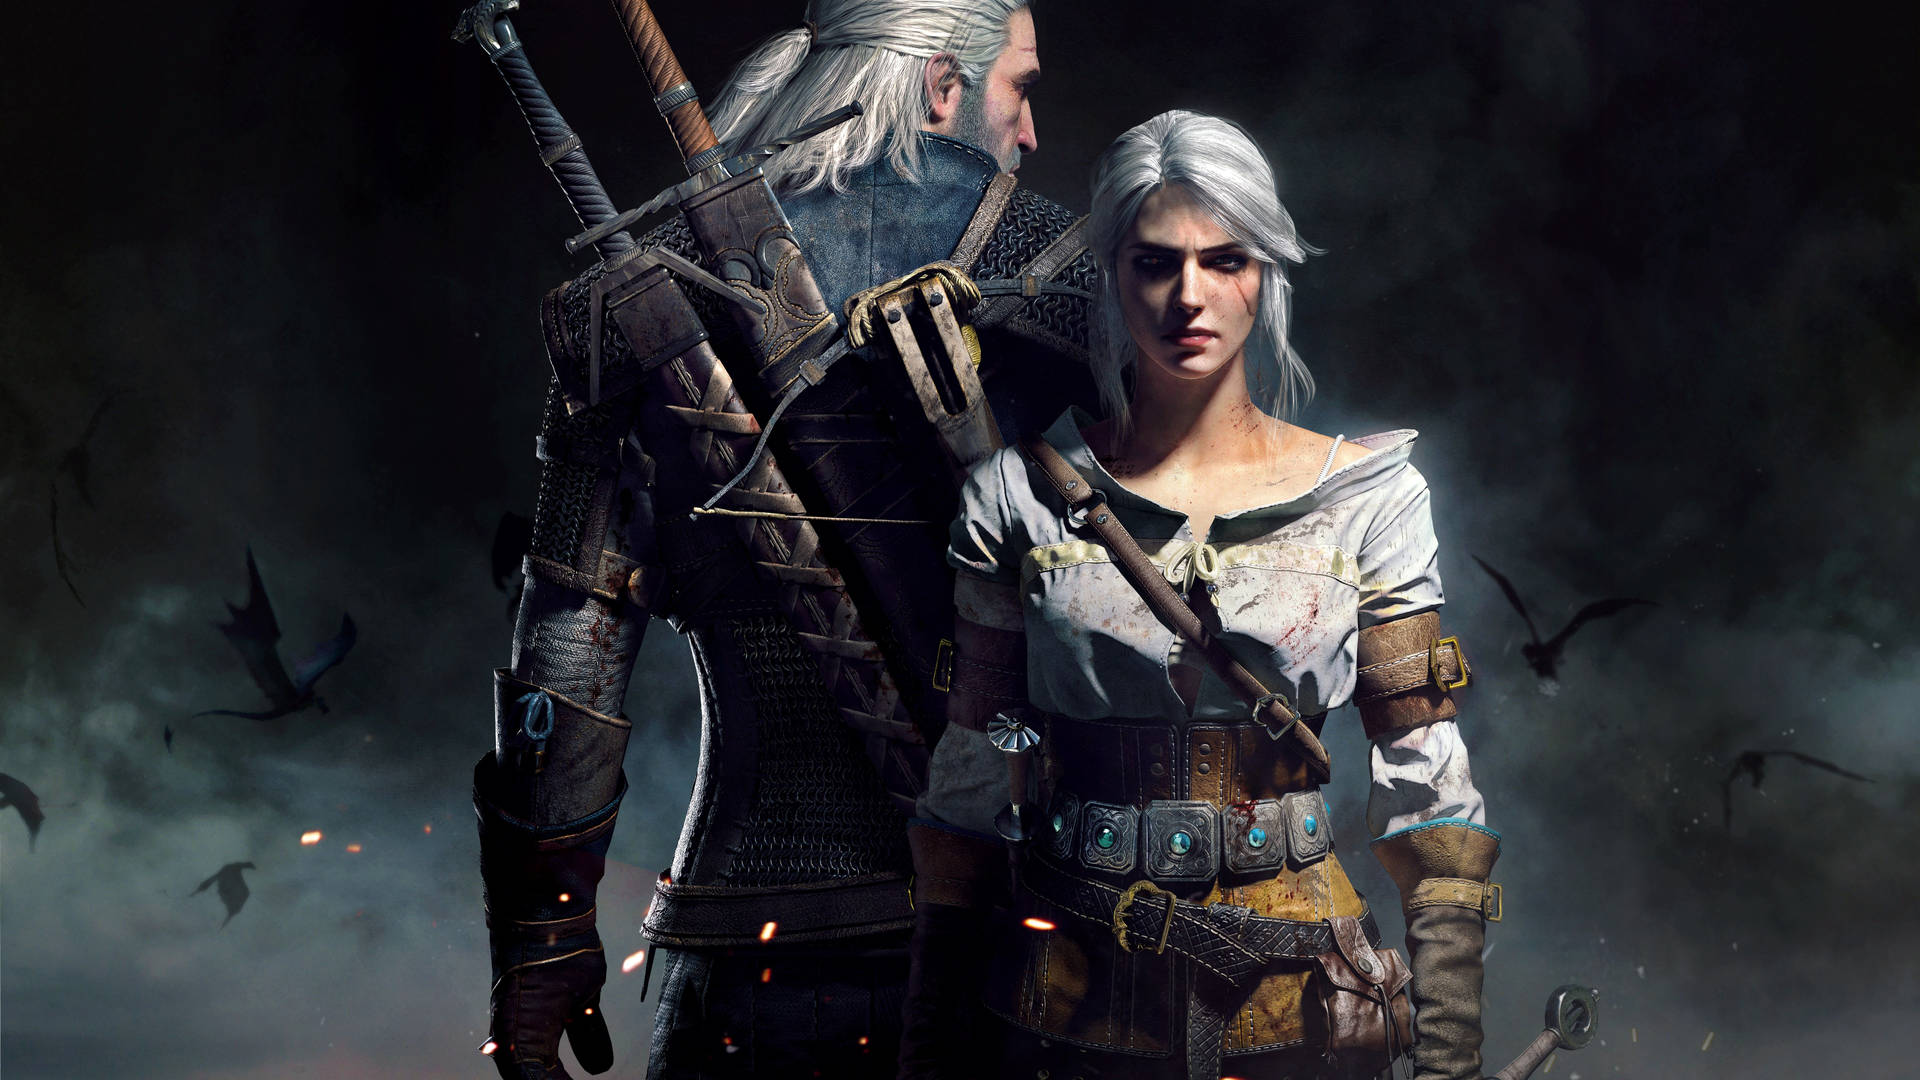 Witcher4k Ciri Och Geralt. Wallpaper